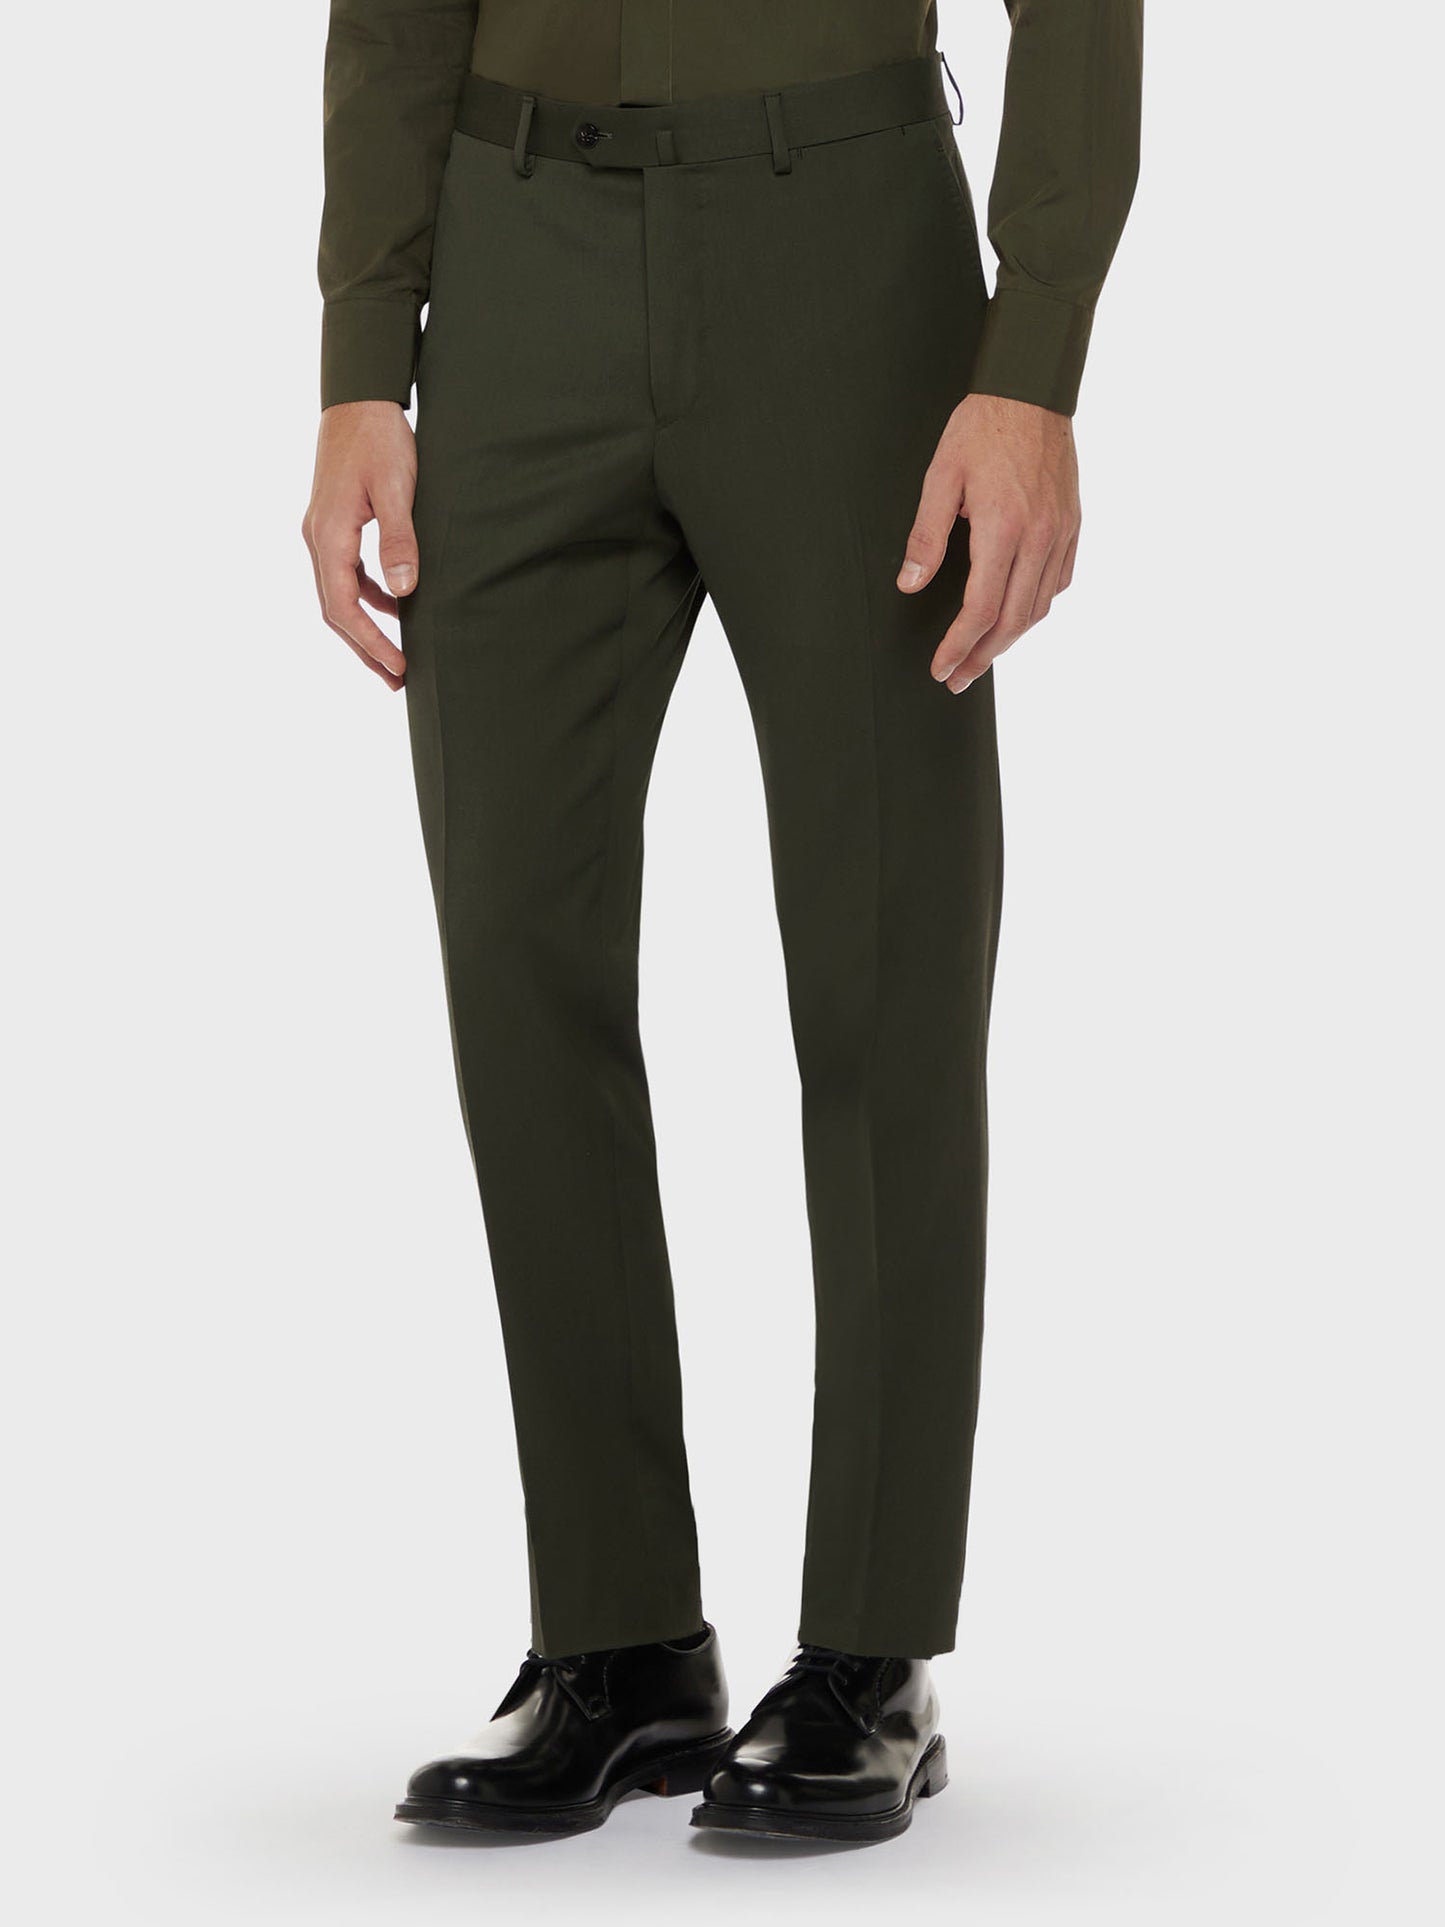 Caruso Menswear Abbigliamento Uomo Abito norma doppiopetto in lana tecnica verde drop 7R dettaglio pantalone